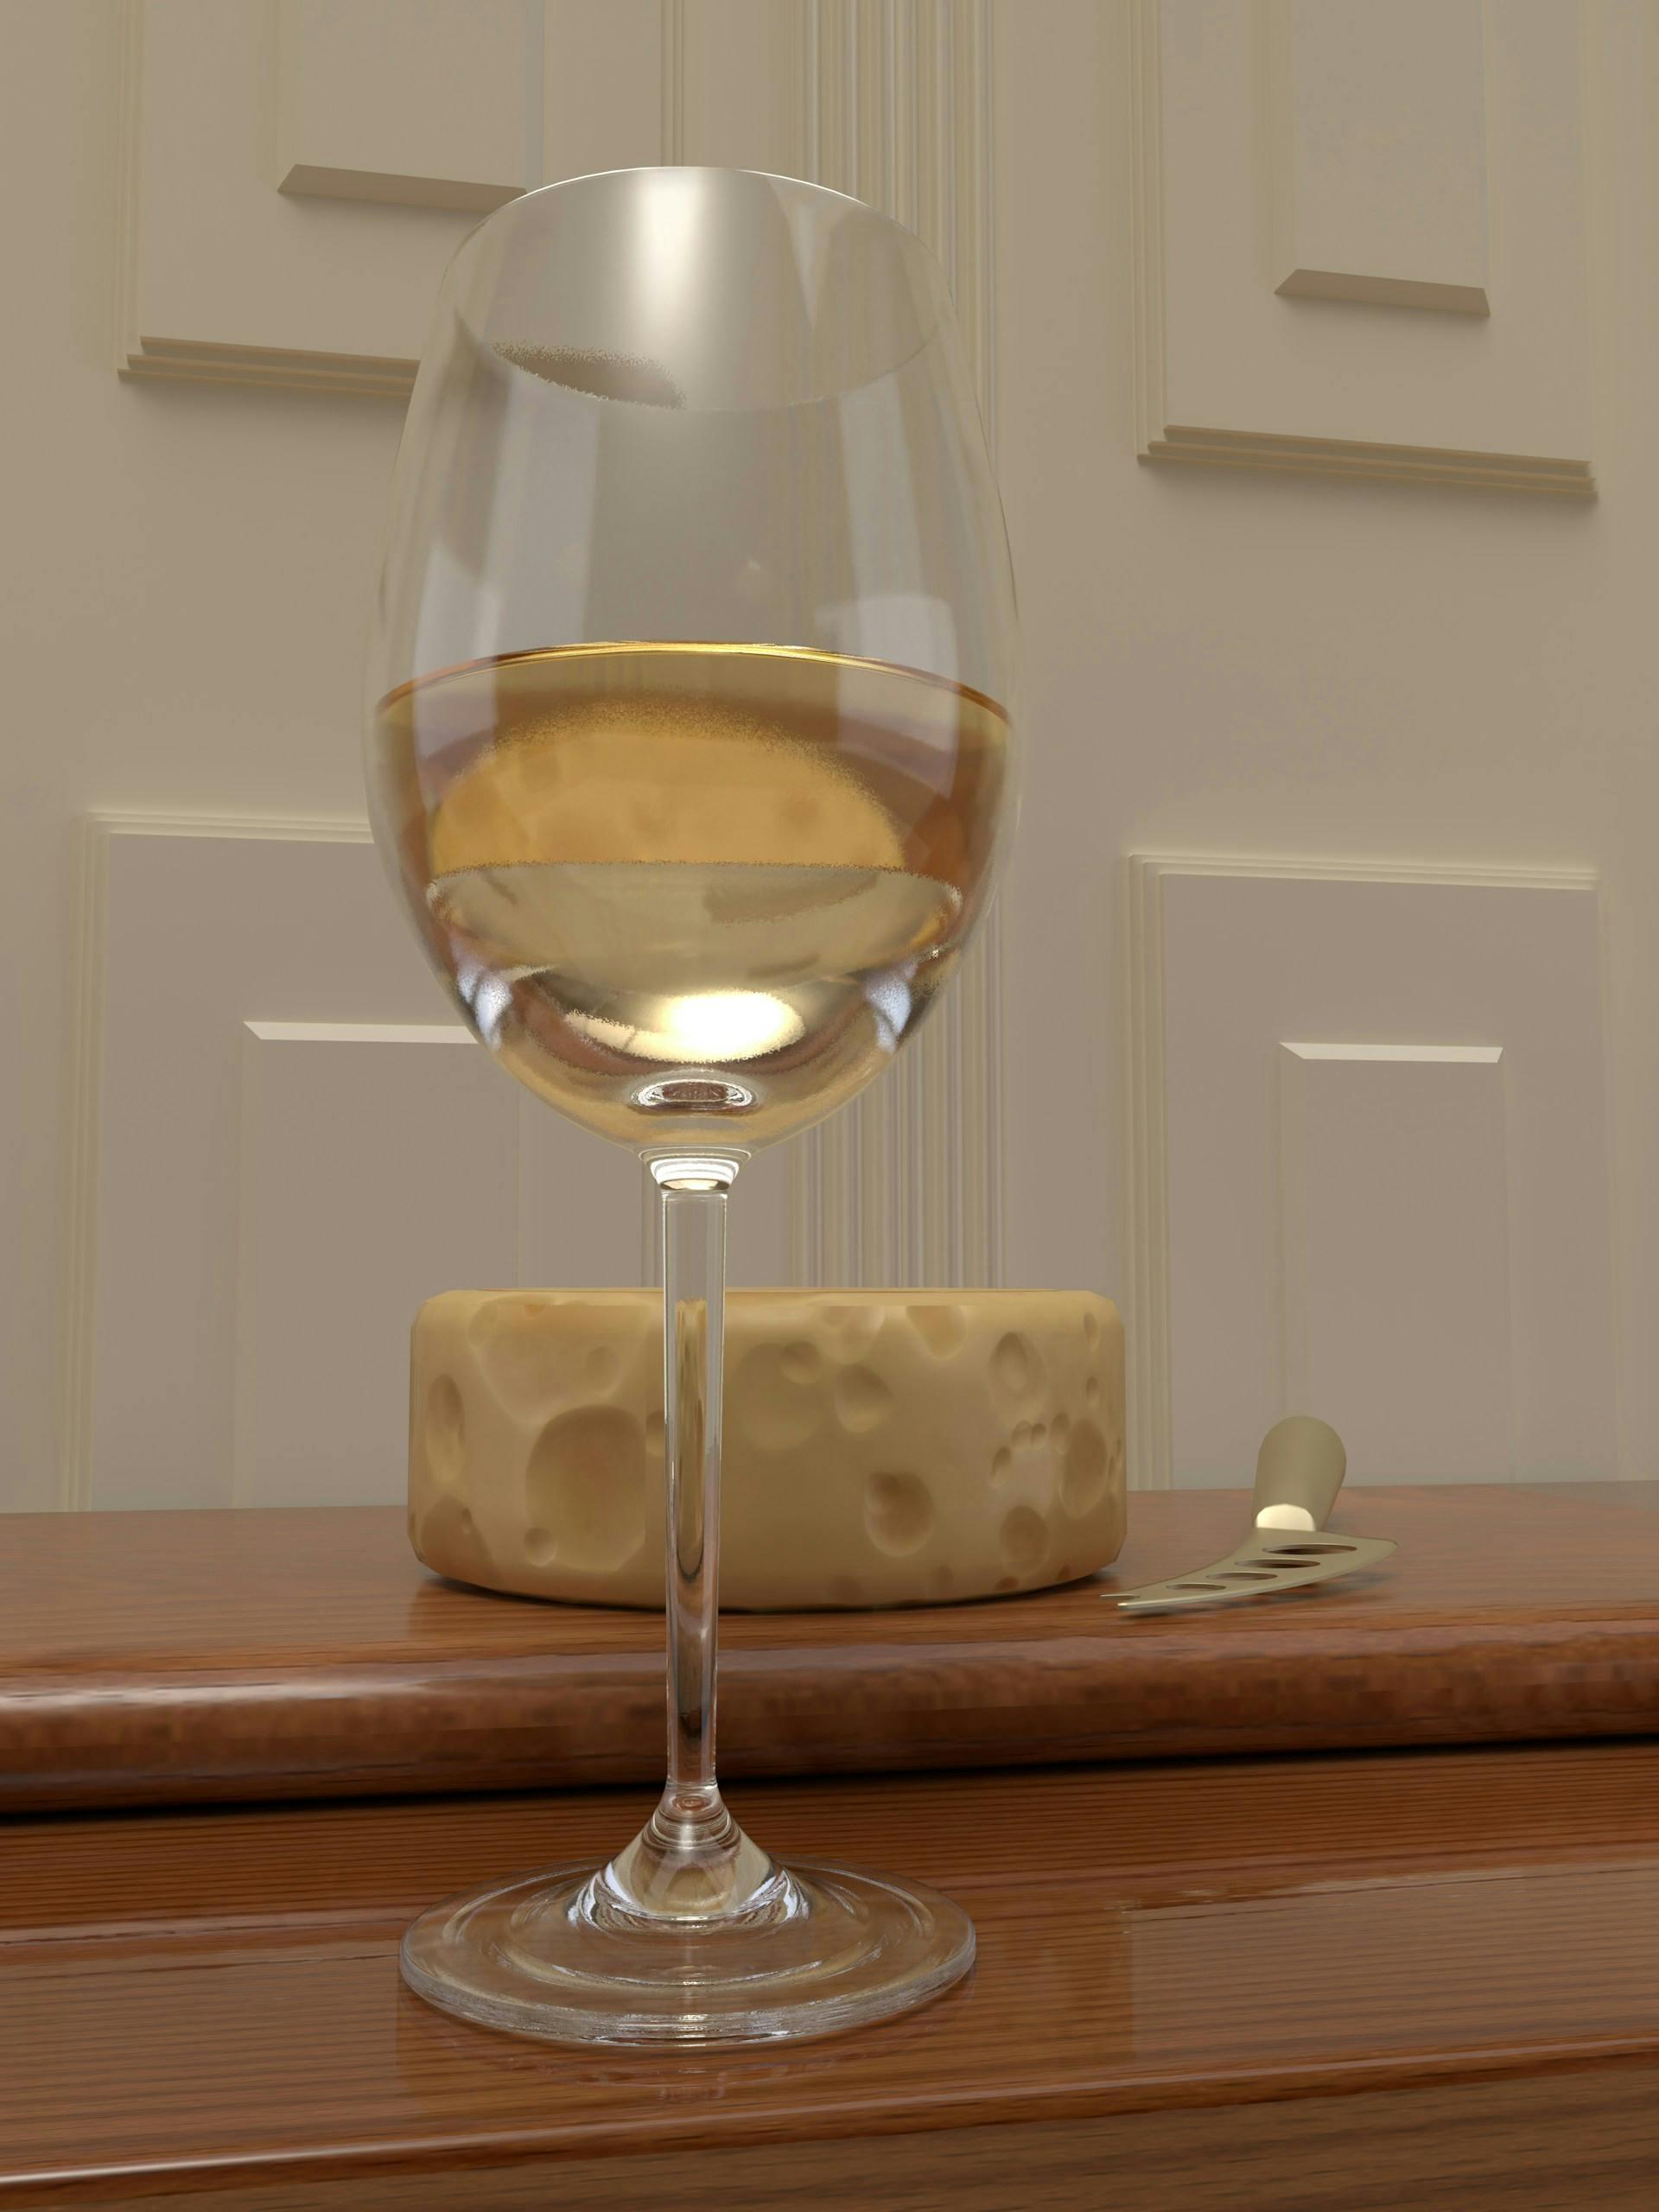 Weinglas mit heller Flüssigkeit darin steht vor einem Käseblock